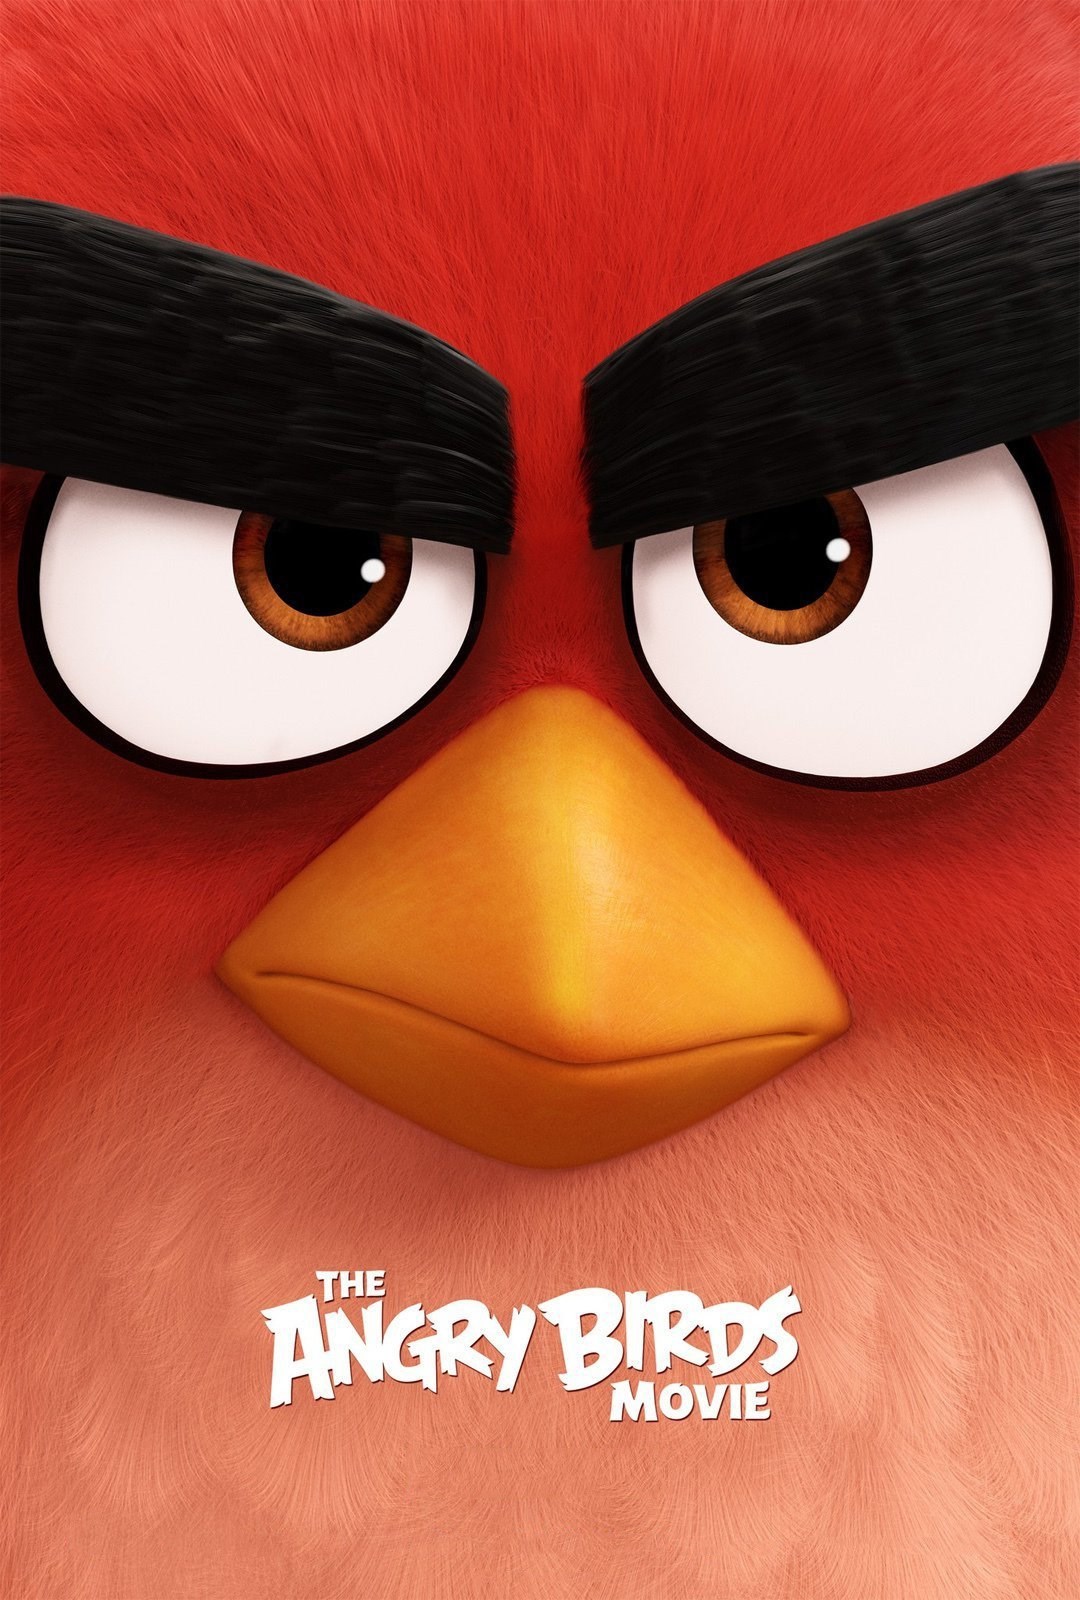 زیرنویس فیلم The Angry Birds Movie 2016